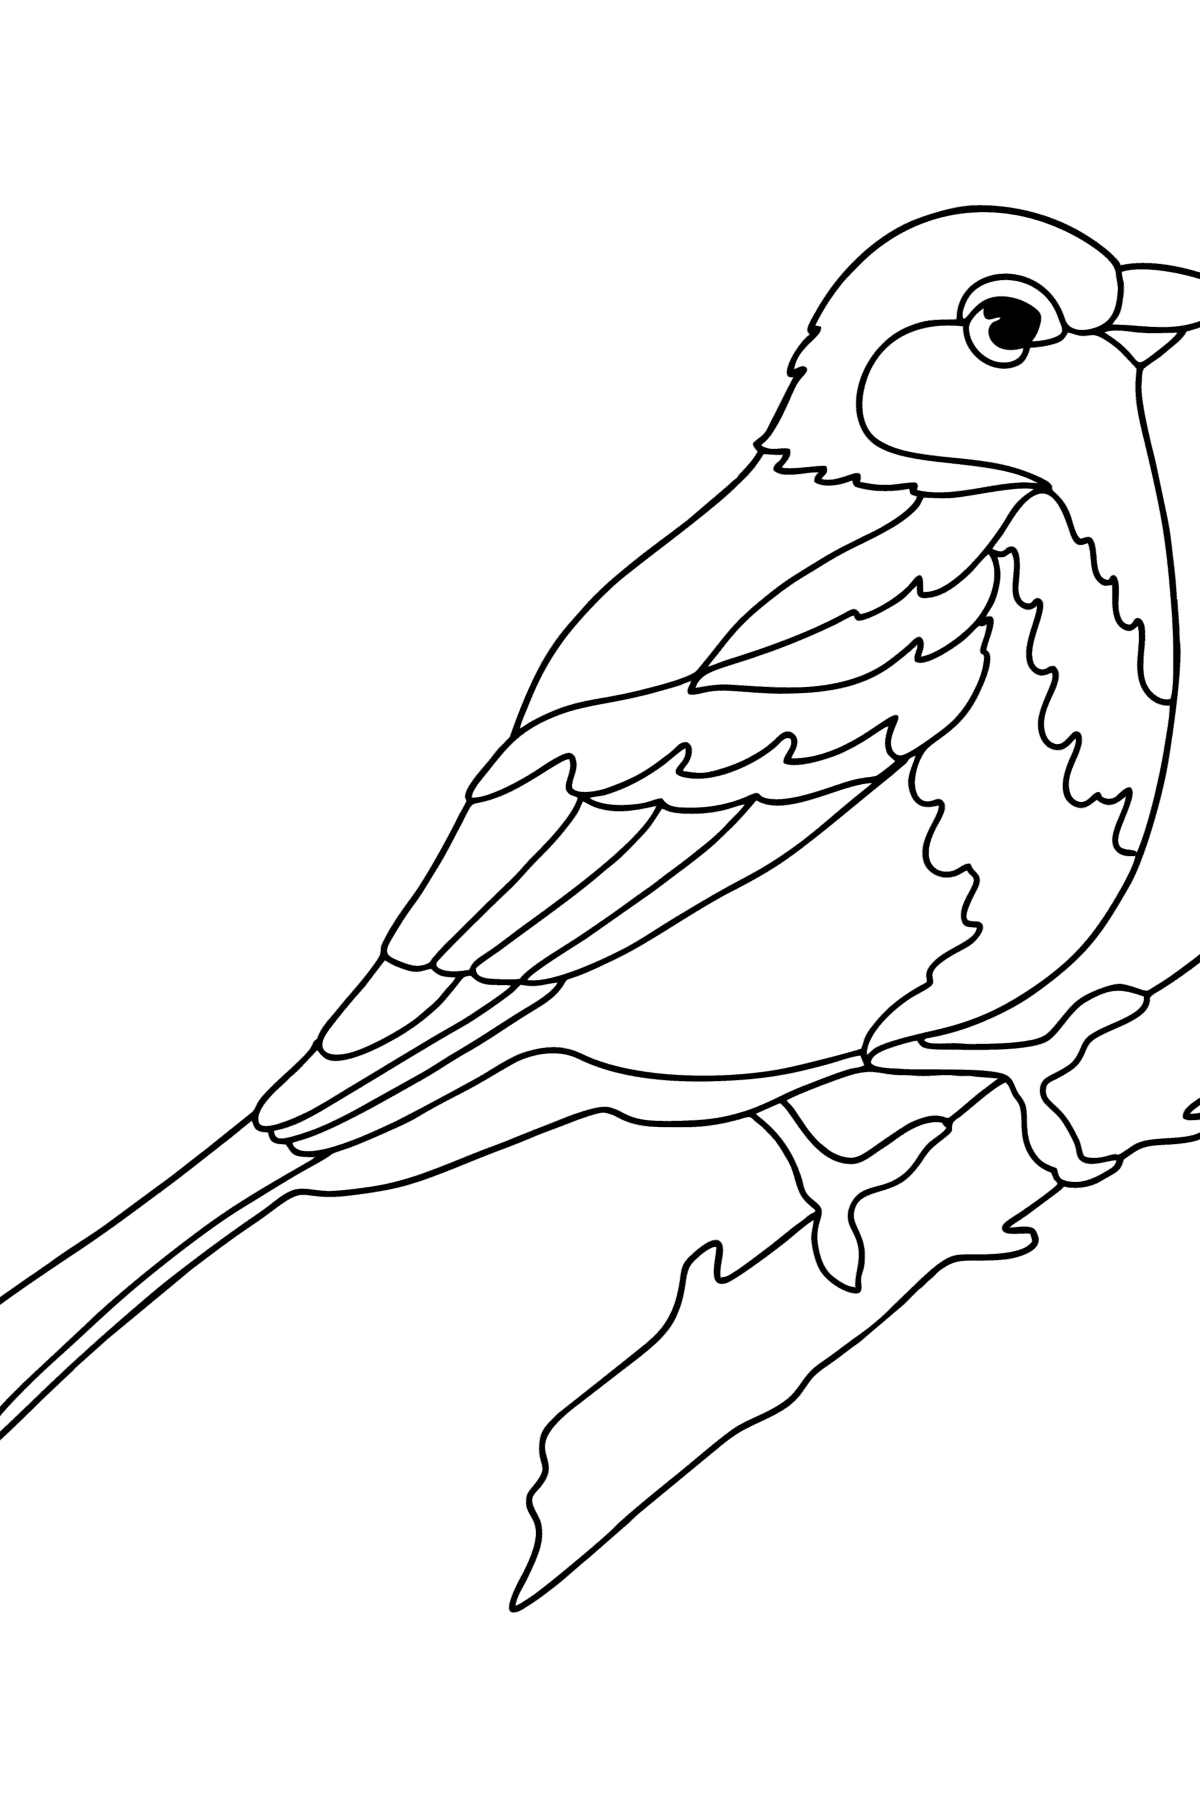 Раскраска Птица Зарянка - Картинки для Детей